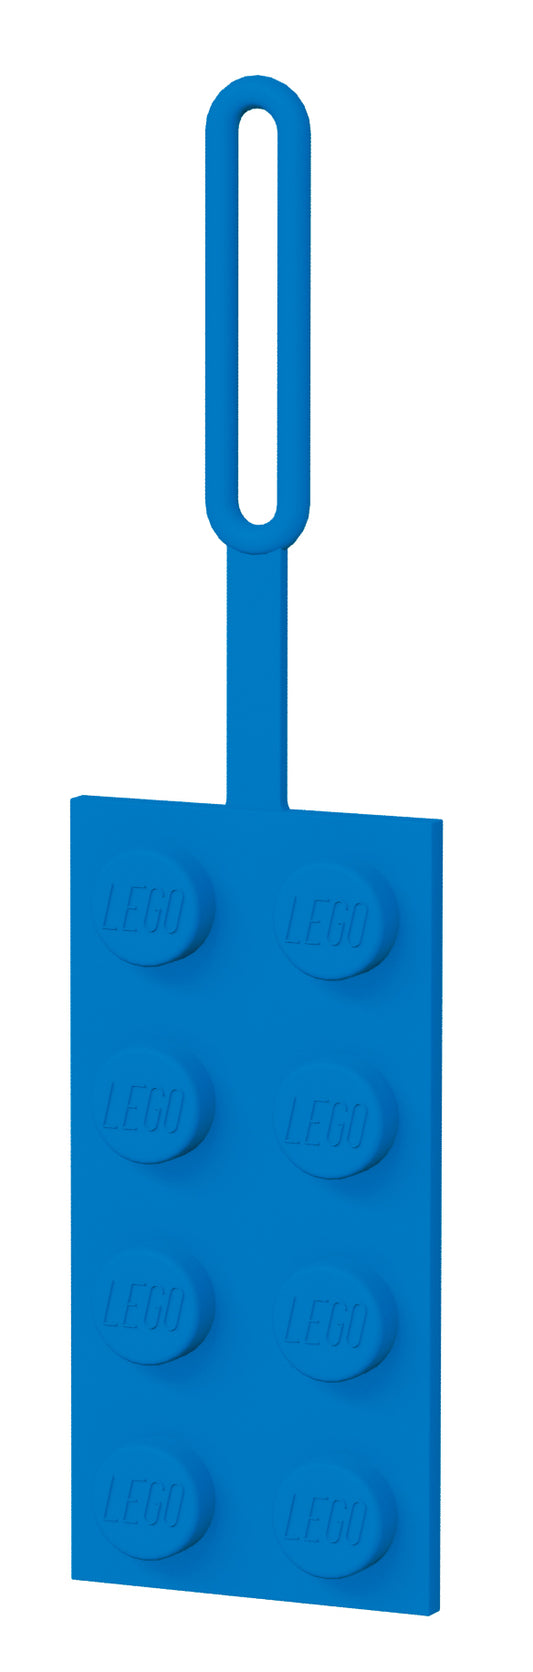 Lego 52001 Blue Lego Luggage Tag